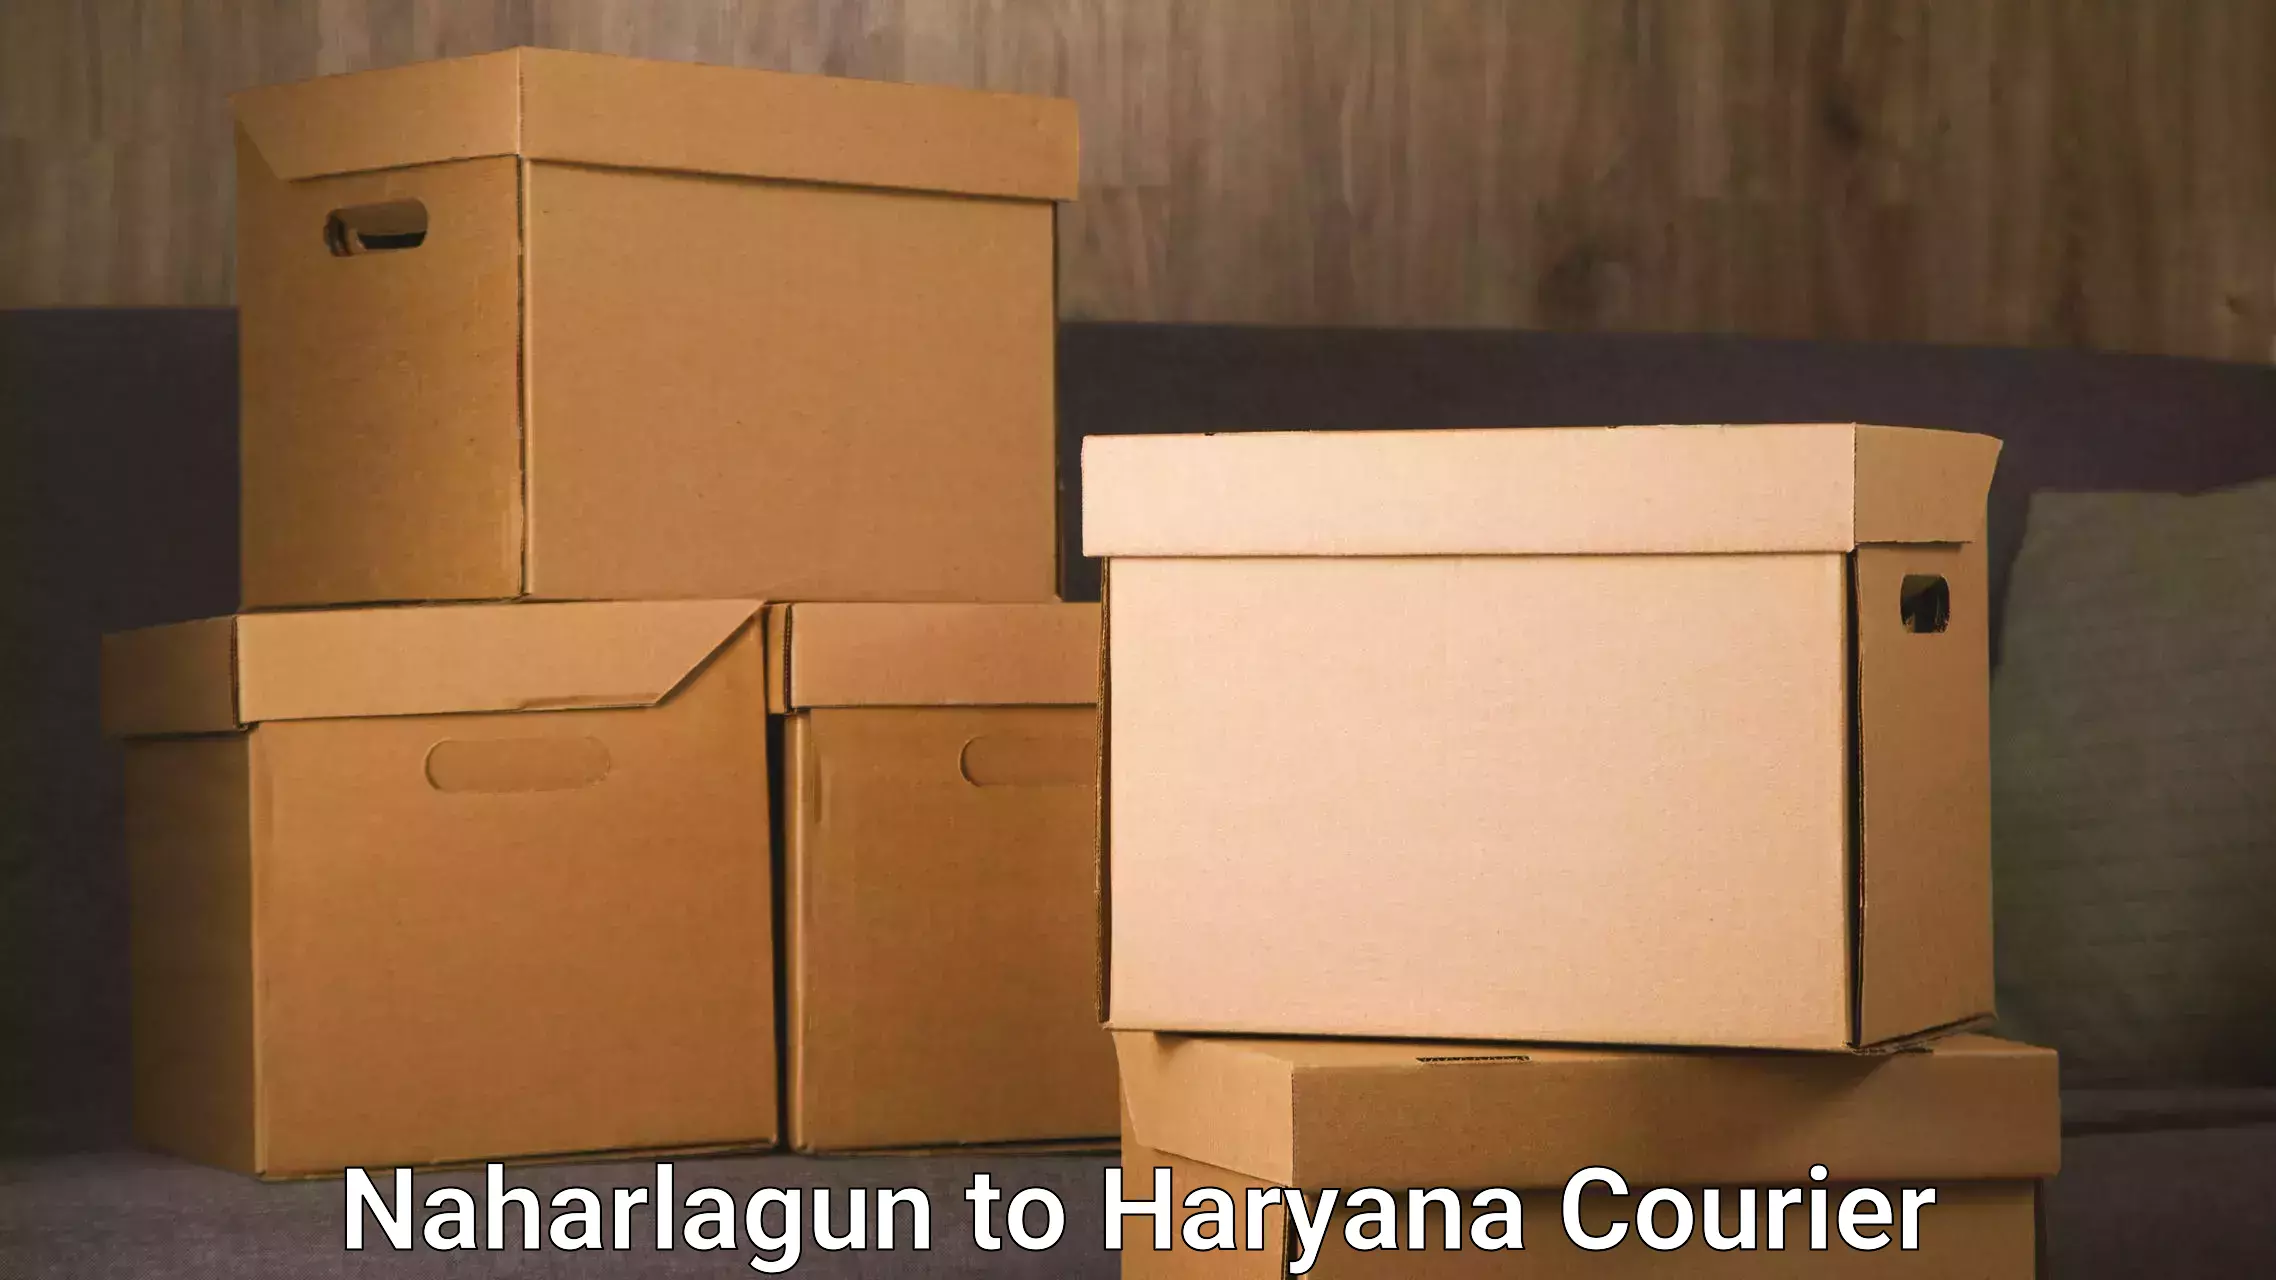 Seamless shipping service Naharlagun to Chaudhary Charan Singh Haryana Agricultural University Hisar